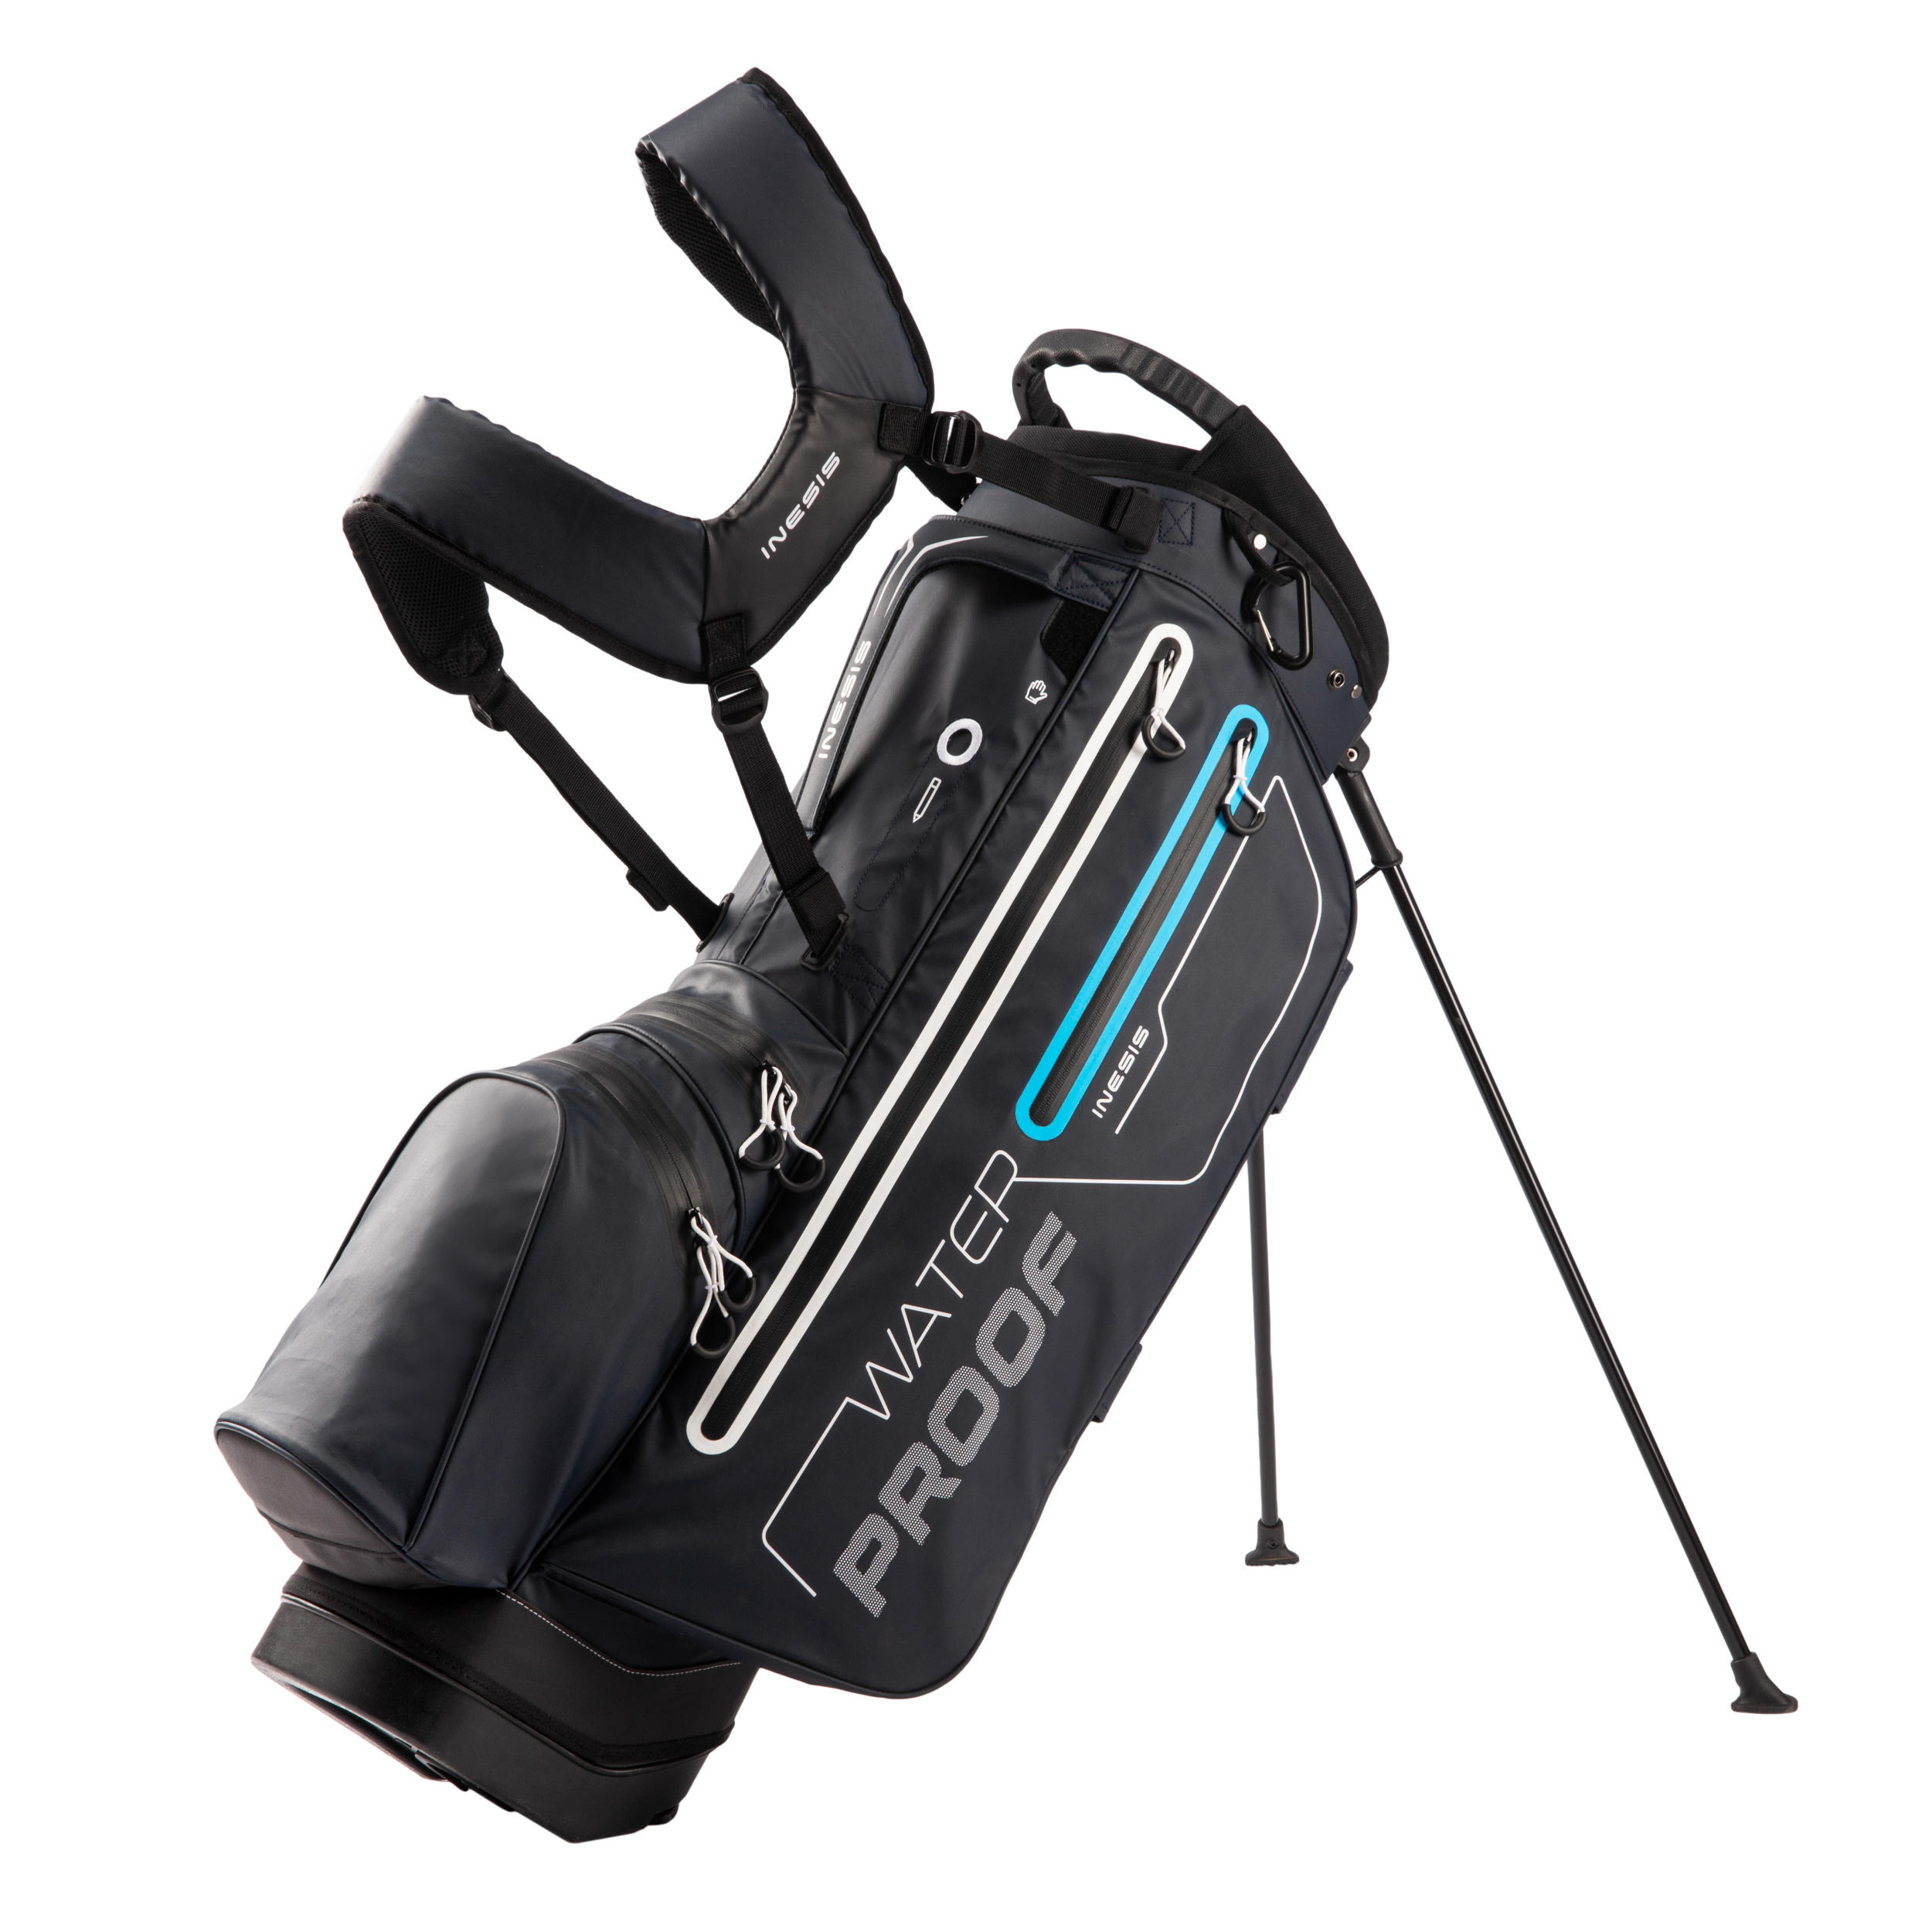 Waterproof Golf Stand Bag - Inesis Blue - INESIS